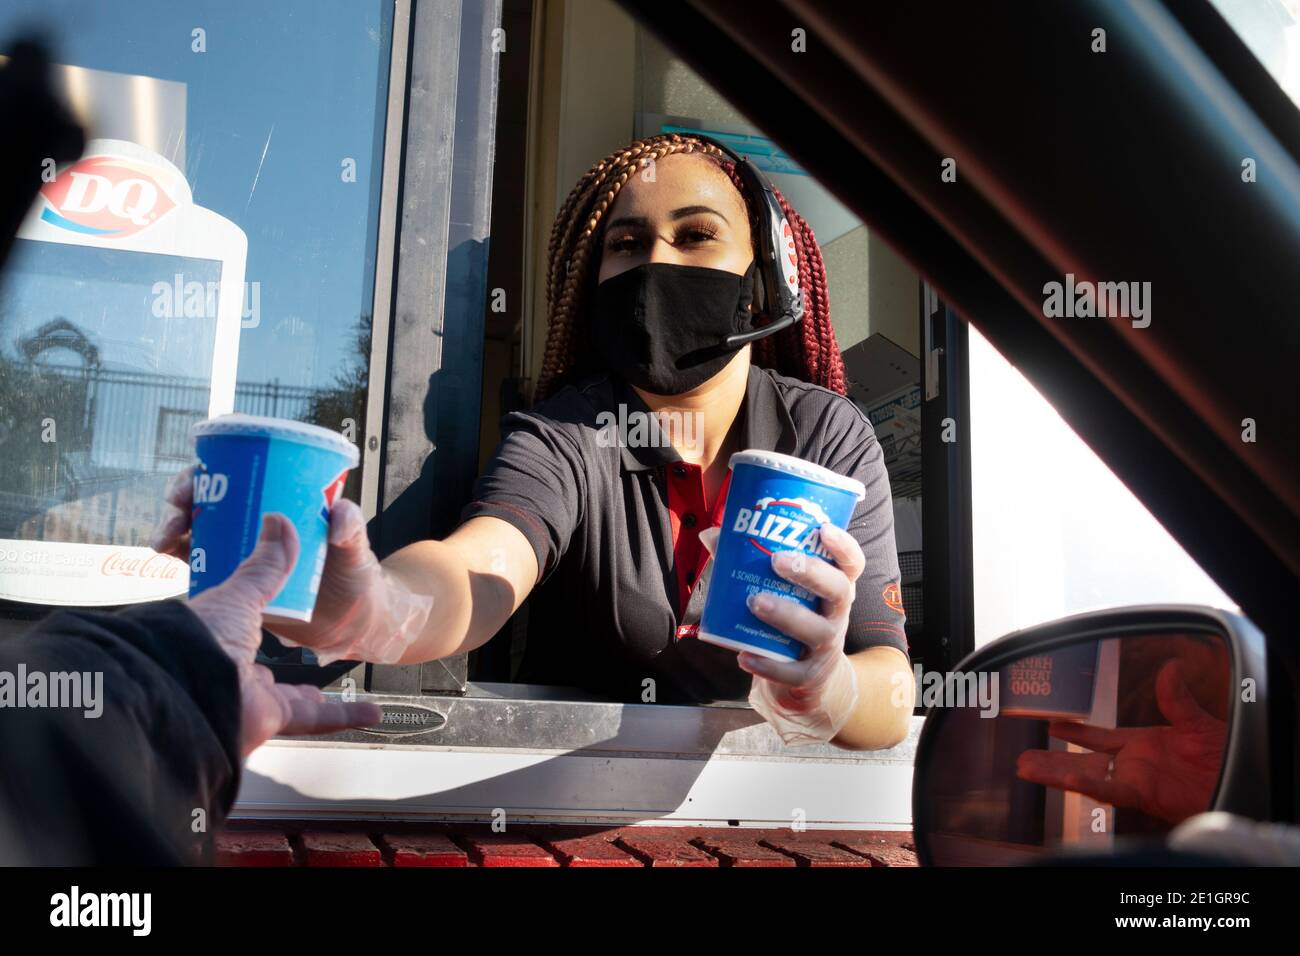 Ramassage de Dairy Queen à travers des blizzards avec un employé portant un masque et des gants en raison de Covid Pandemic. St Paul Minnesota MN États-Unis Banque D'Images